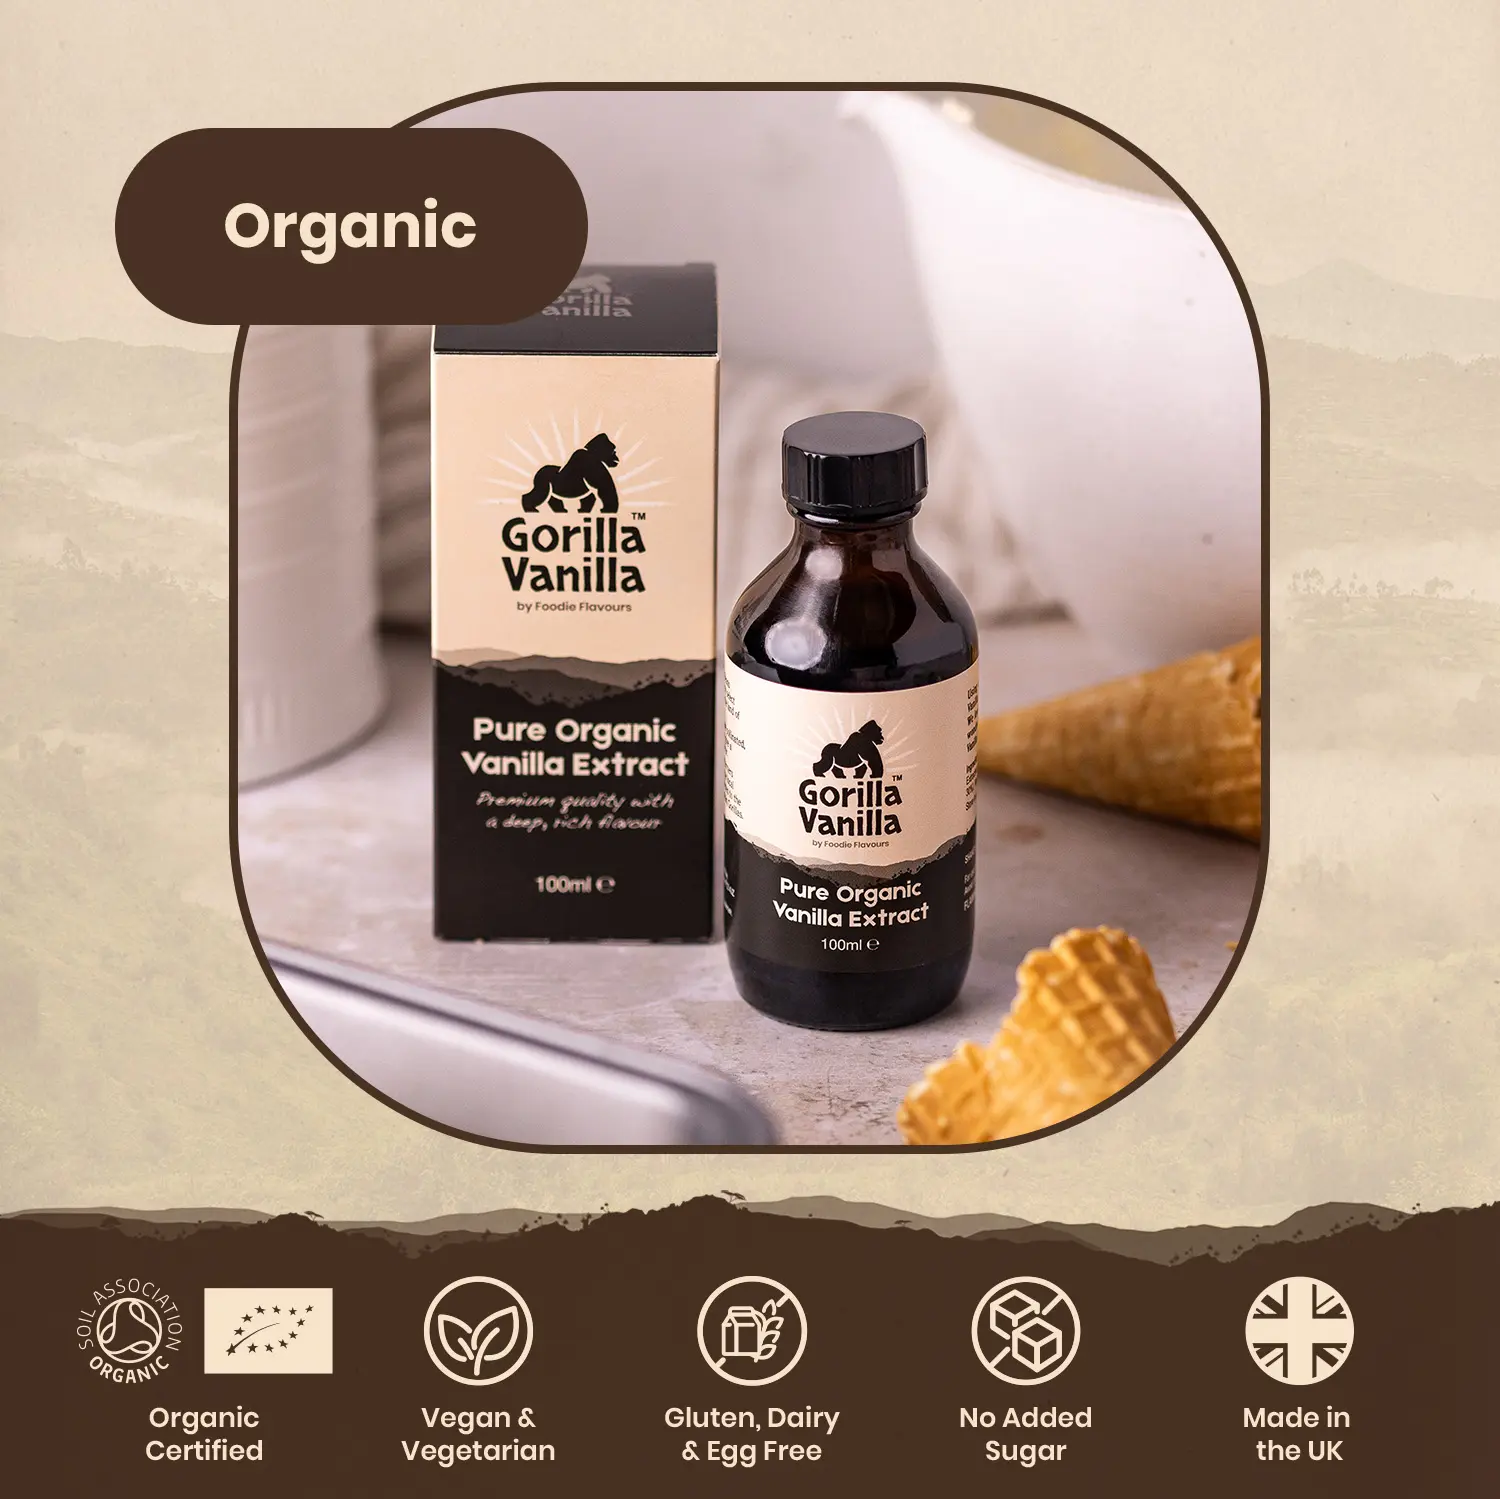 Gorilla Vanilla - Organic Vanilla Extract - Features